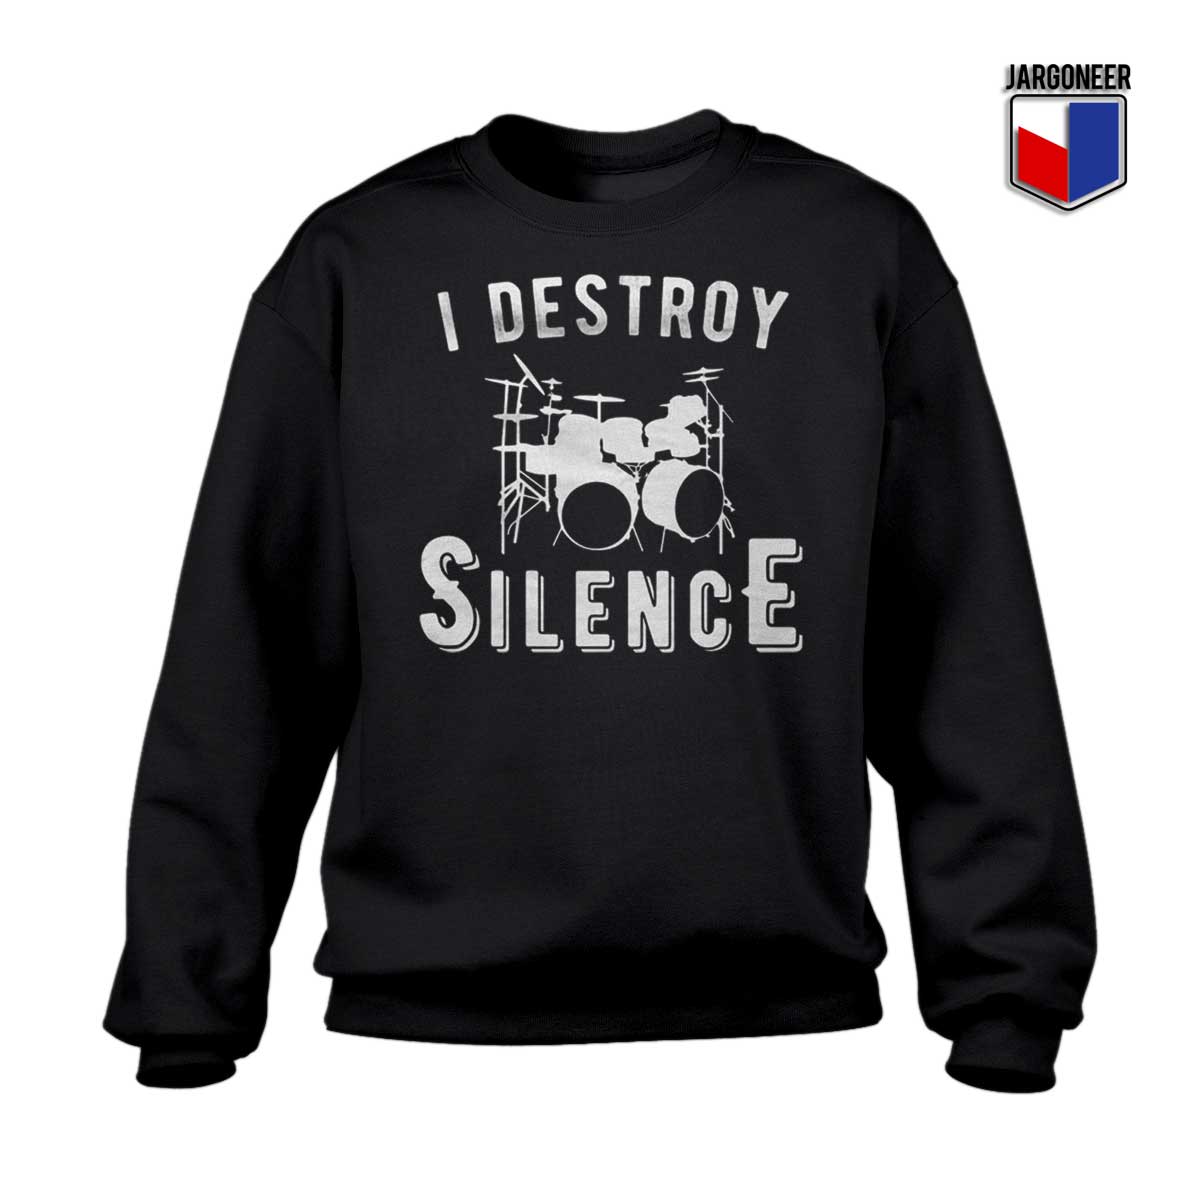 I Destroy Silence Sweatshirt - Shop Unique Graphic Cool Shirt Designs